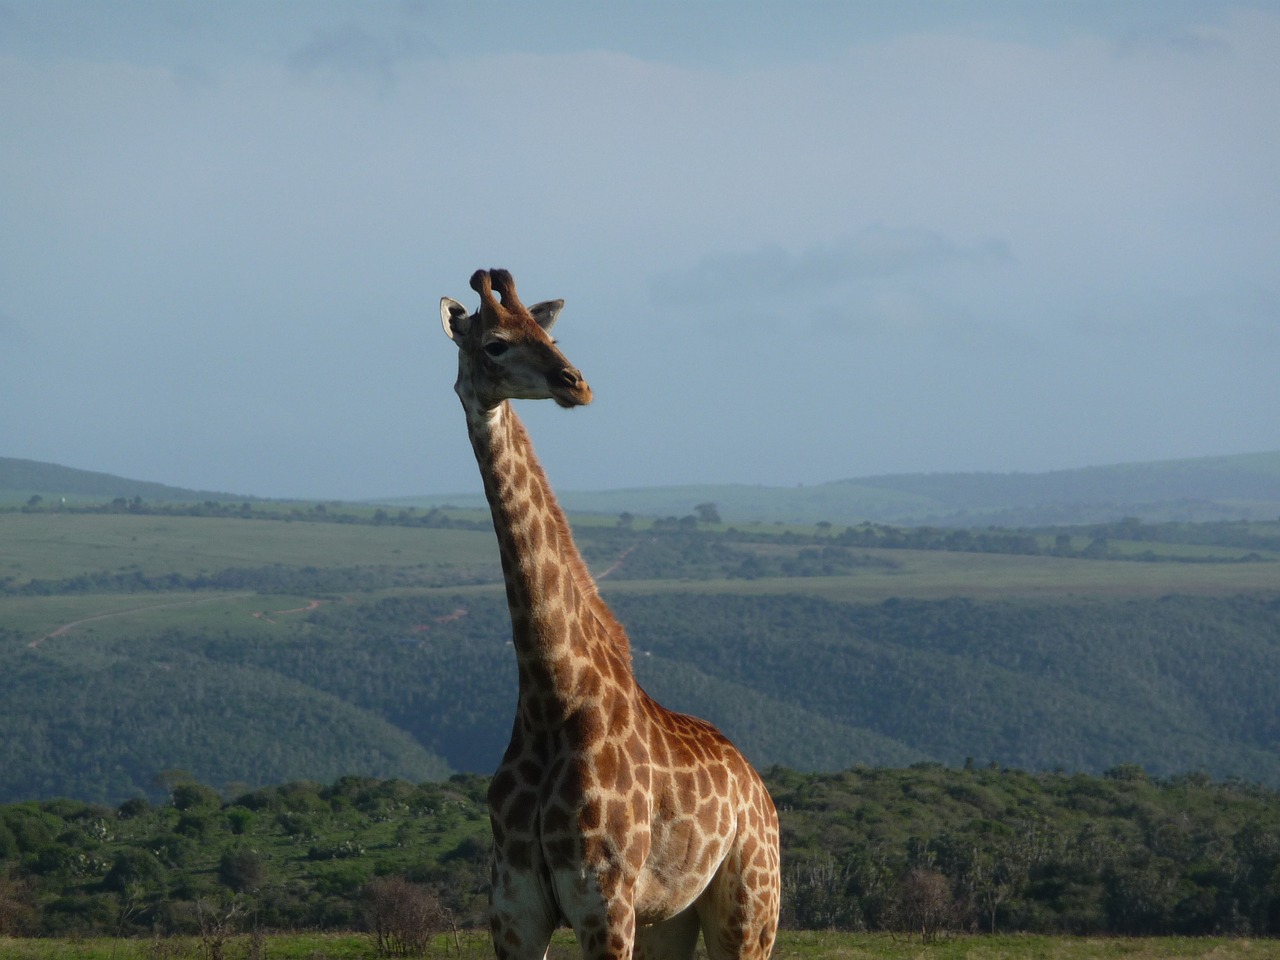 giraffe africa safari free photo